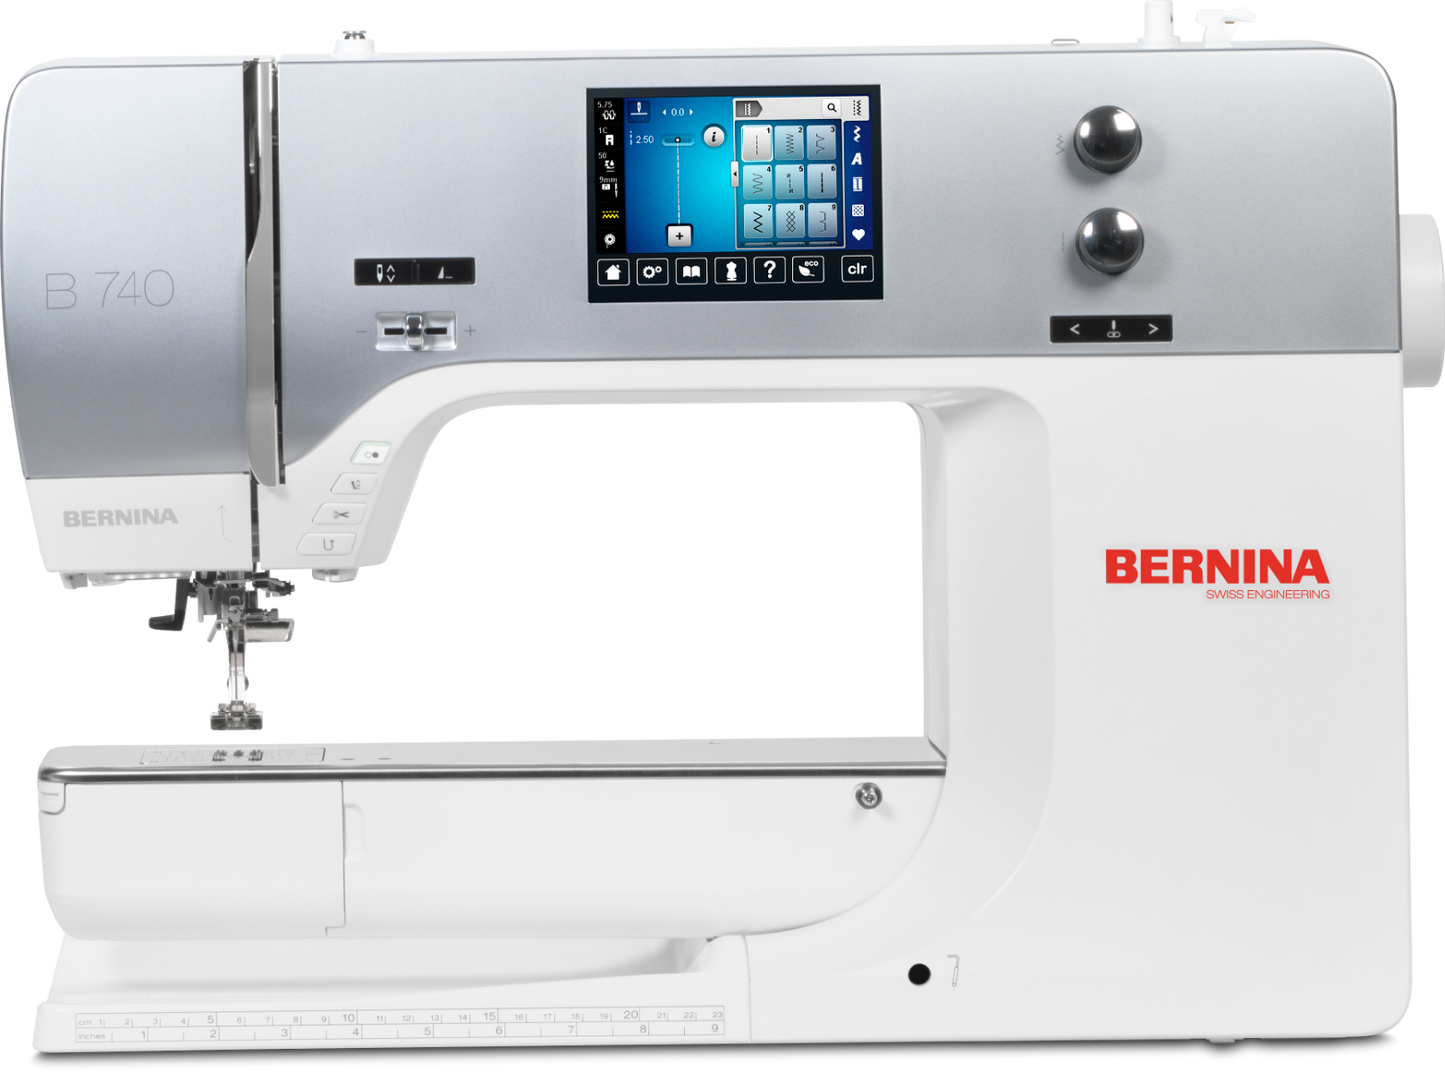 Bernina 740 Sewing Machine,Bernina 740 Sewing Machine,Bernina 740 Sewing Machine